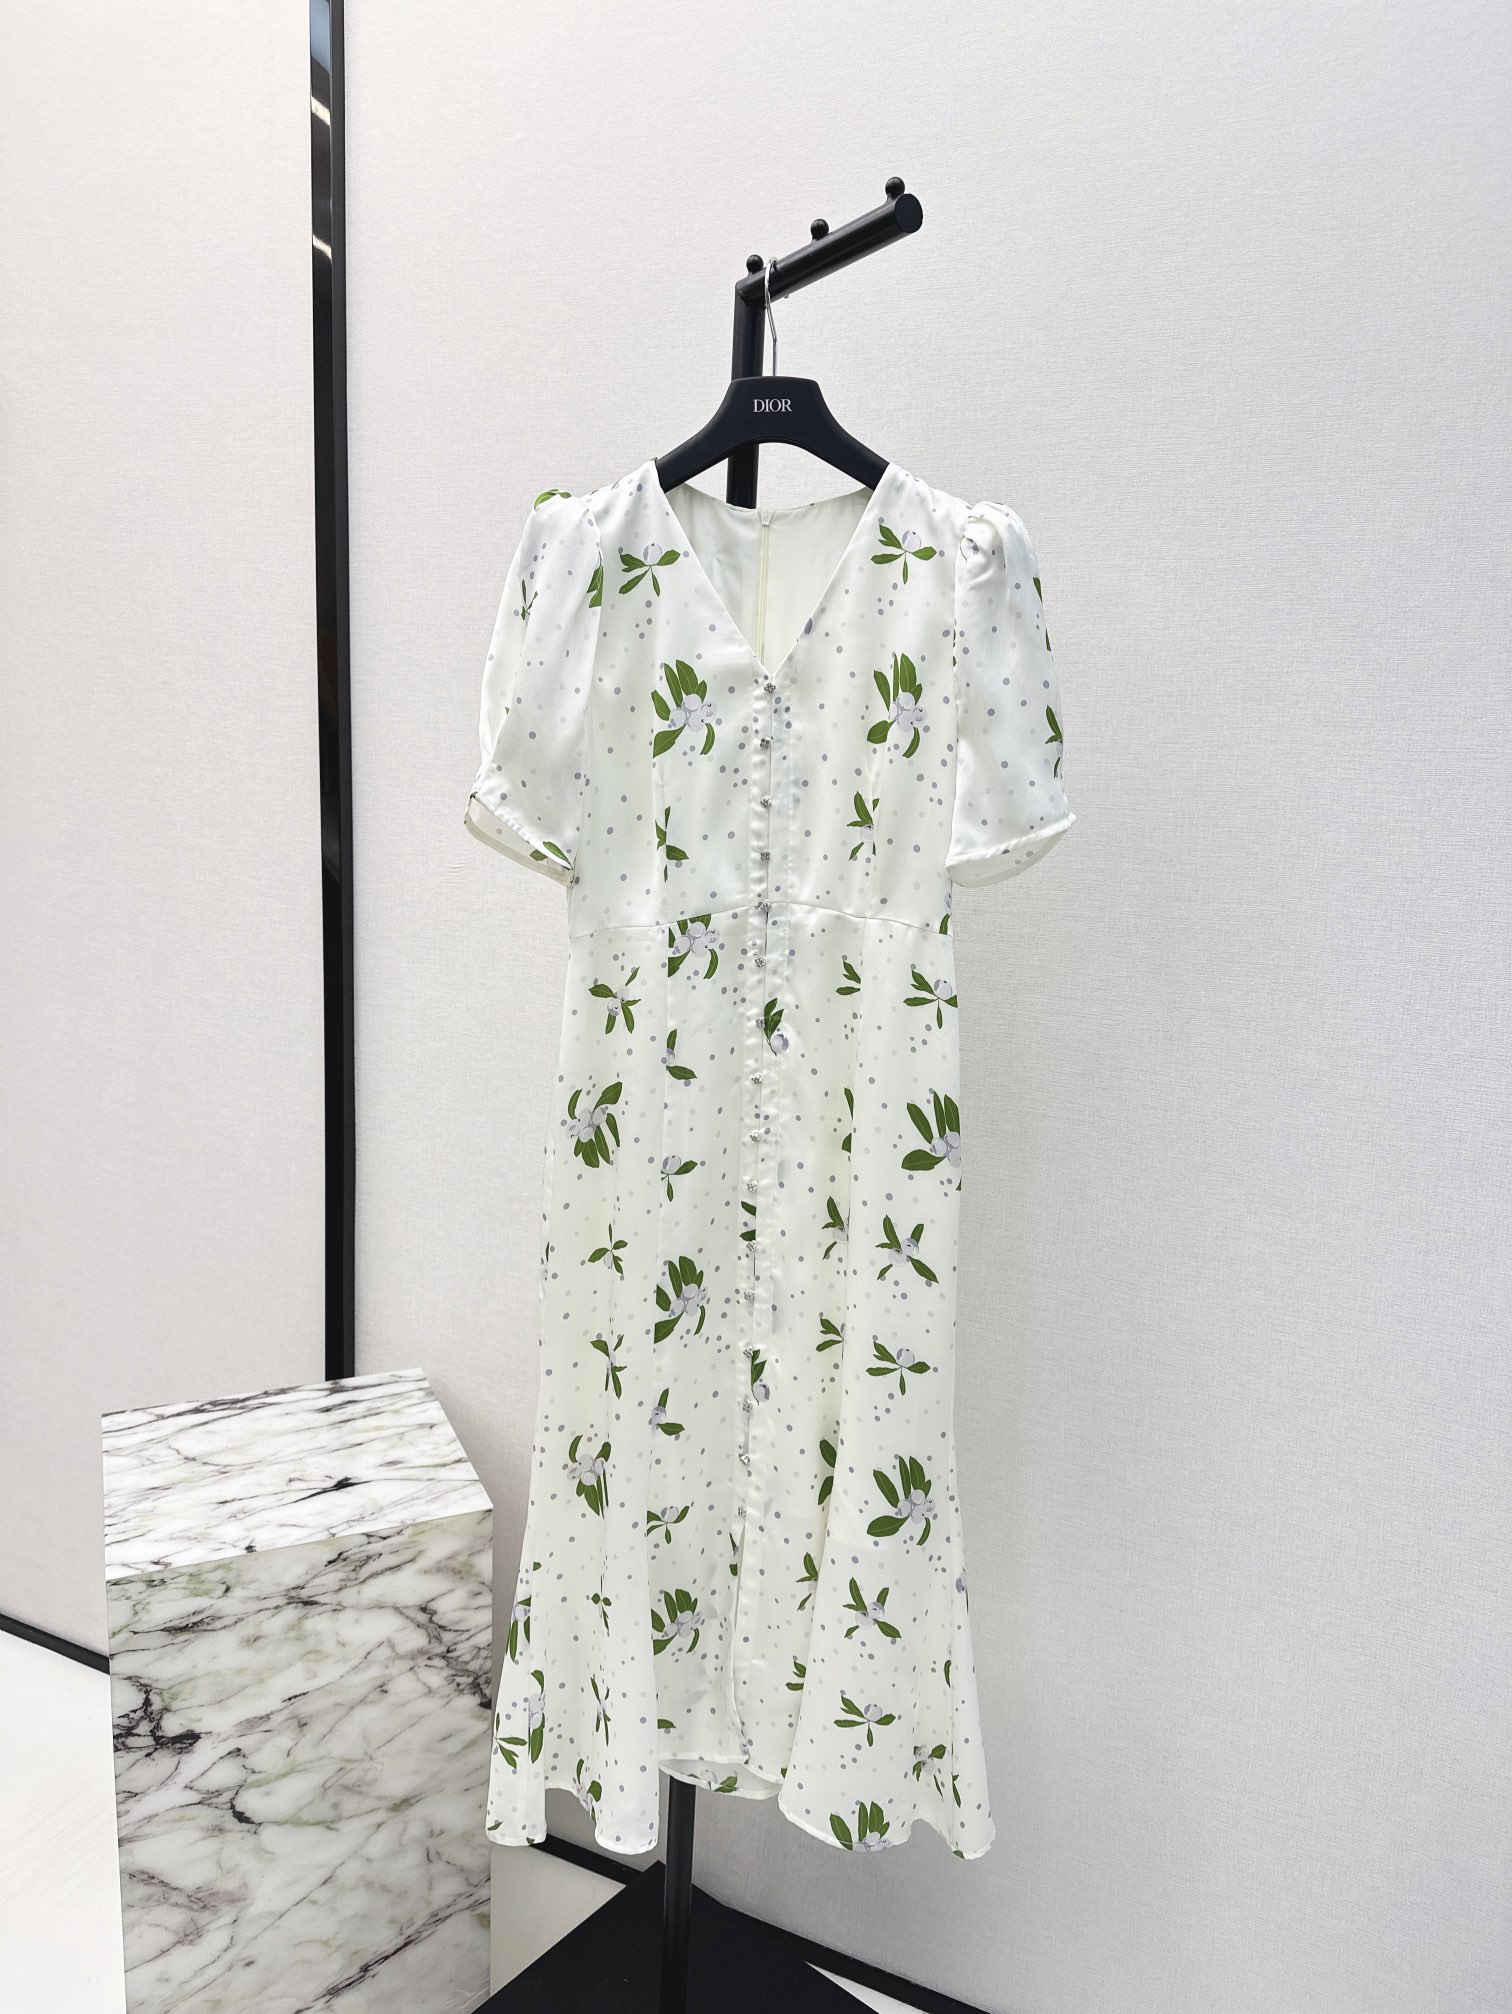 独家首发时髦小众设计24Ss春夏最新款印花连衣裙淡雅清新的度假风气息优雅花卉图案立体收腰版型浪漫优雅的白